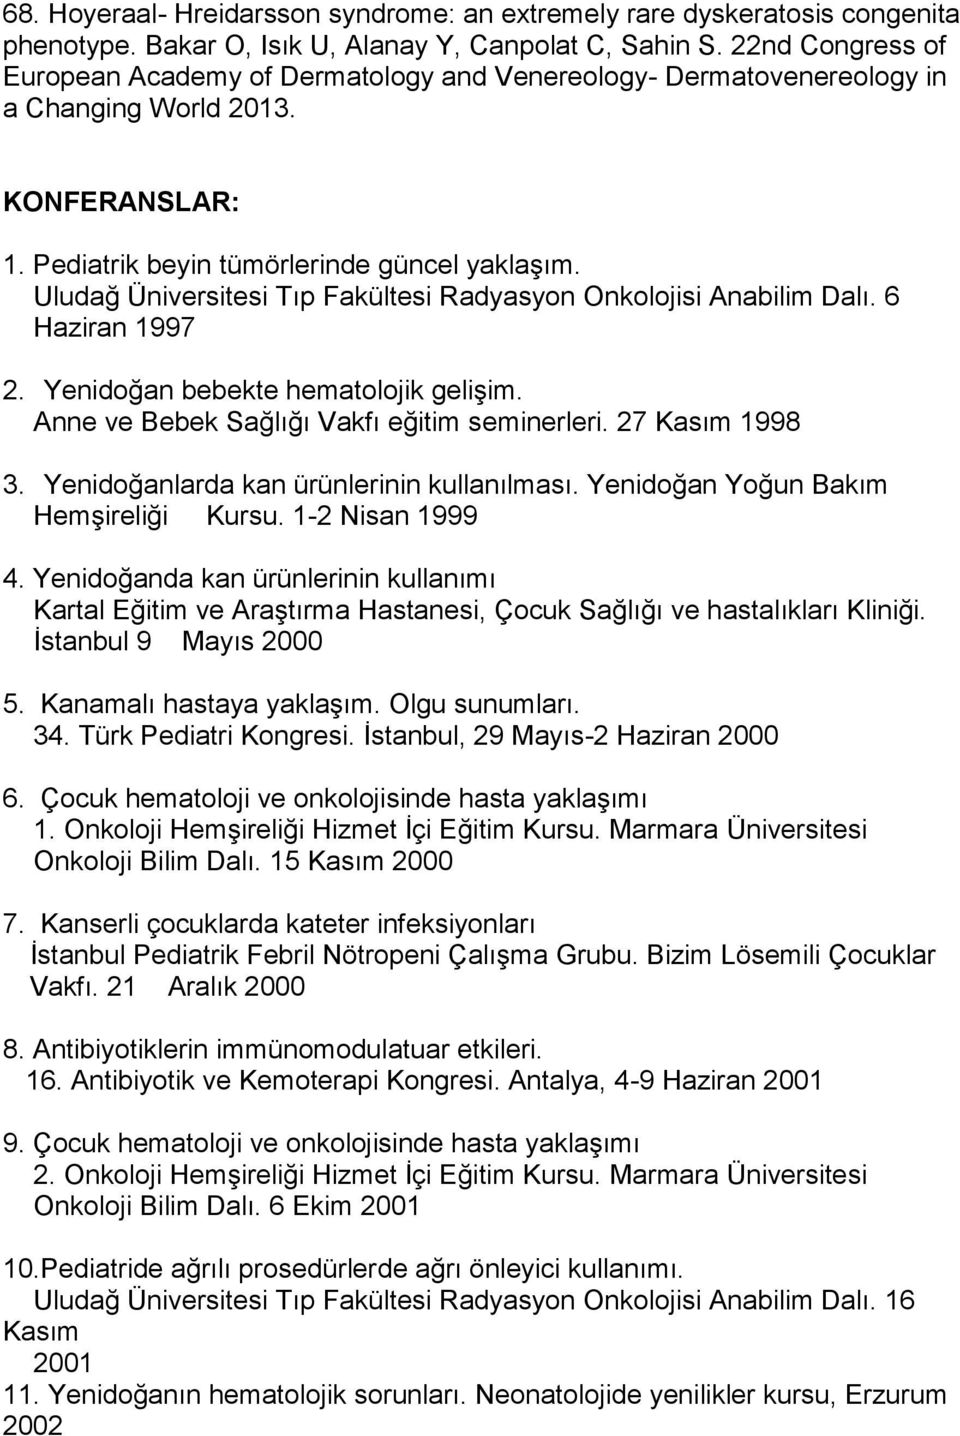 Uludağ Üniversitesi Tıp Fakültesi Radyasyon Onkolojisi Anabilim Dalı. 6 Haziran 1997 2. Yenidoğan bebekte hematolojik gelişim. Anne ve Bebek Sağlığı Vakfı eğitim seminerleri. 27 Kasım 1998 3.